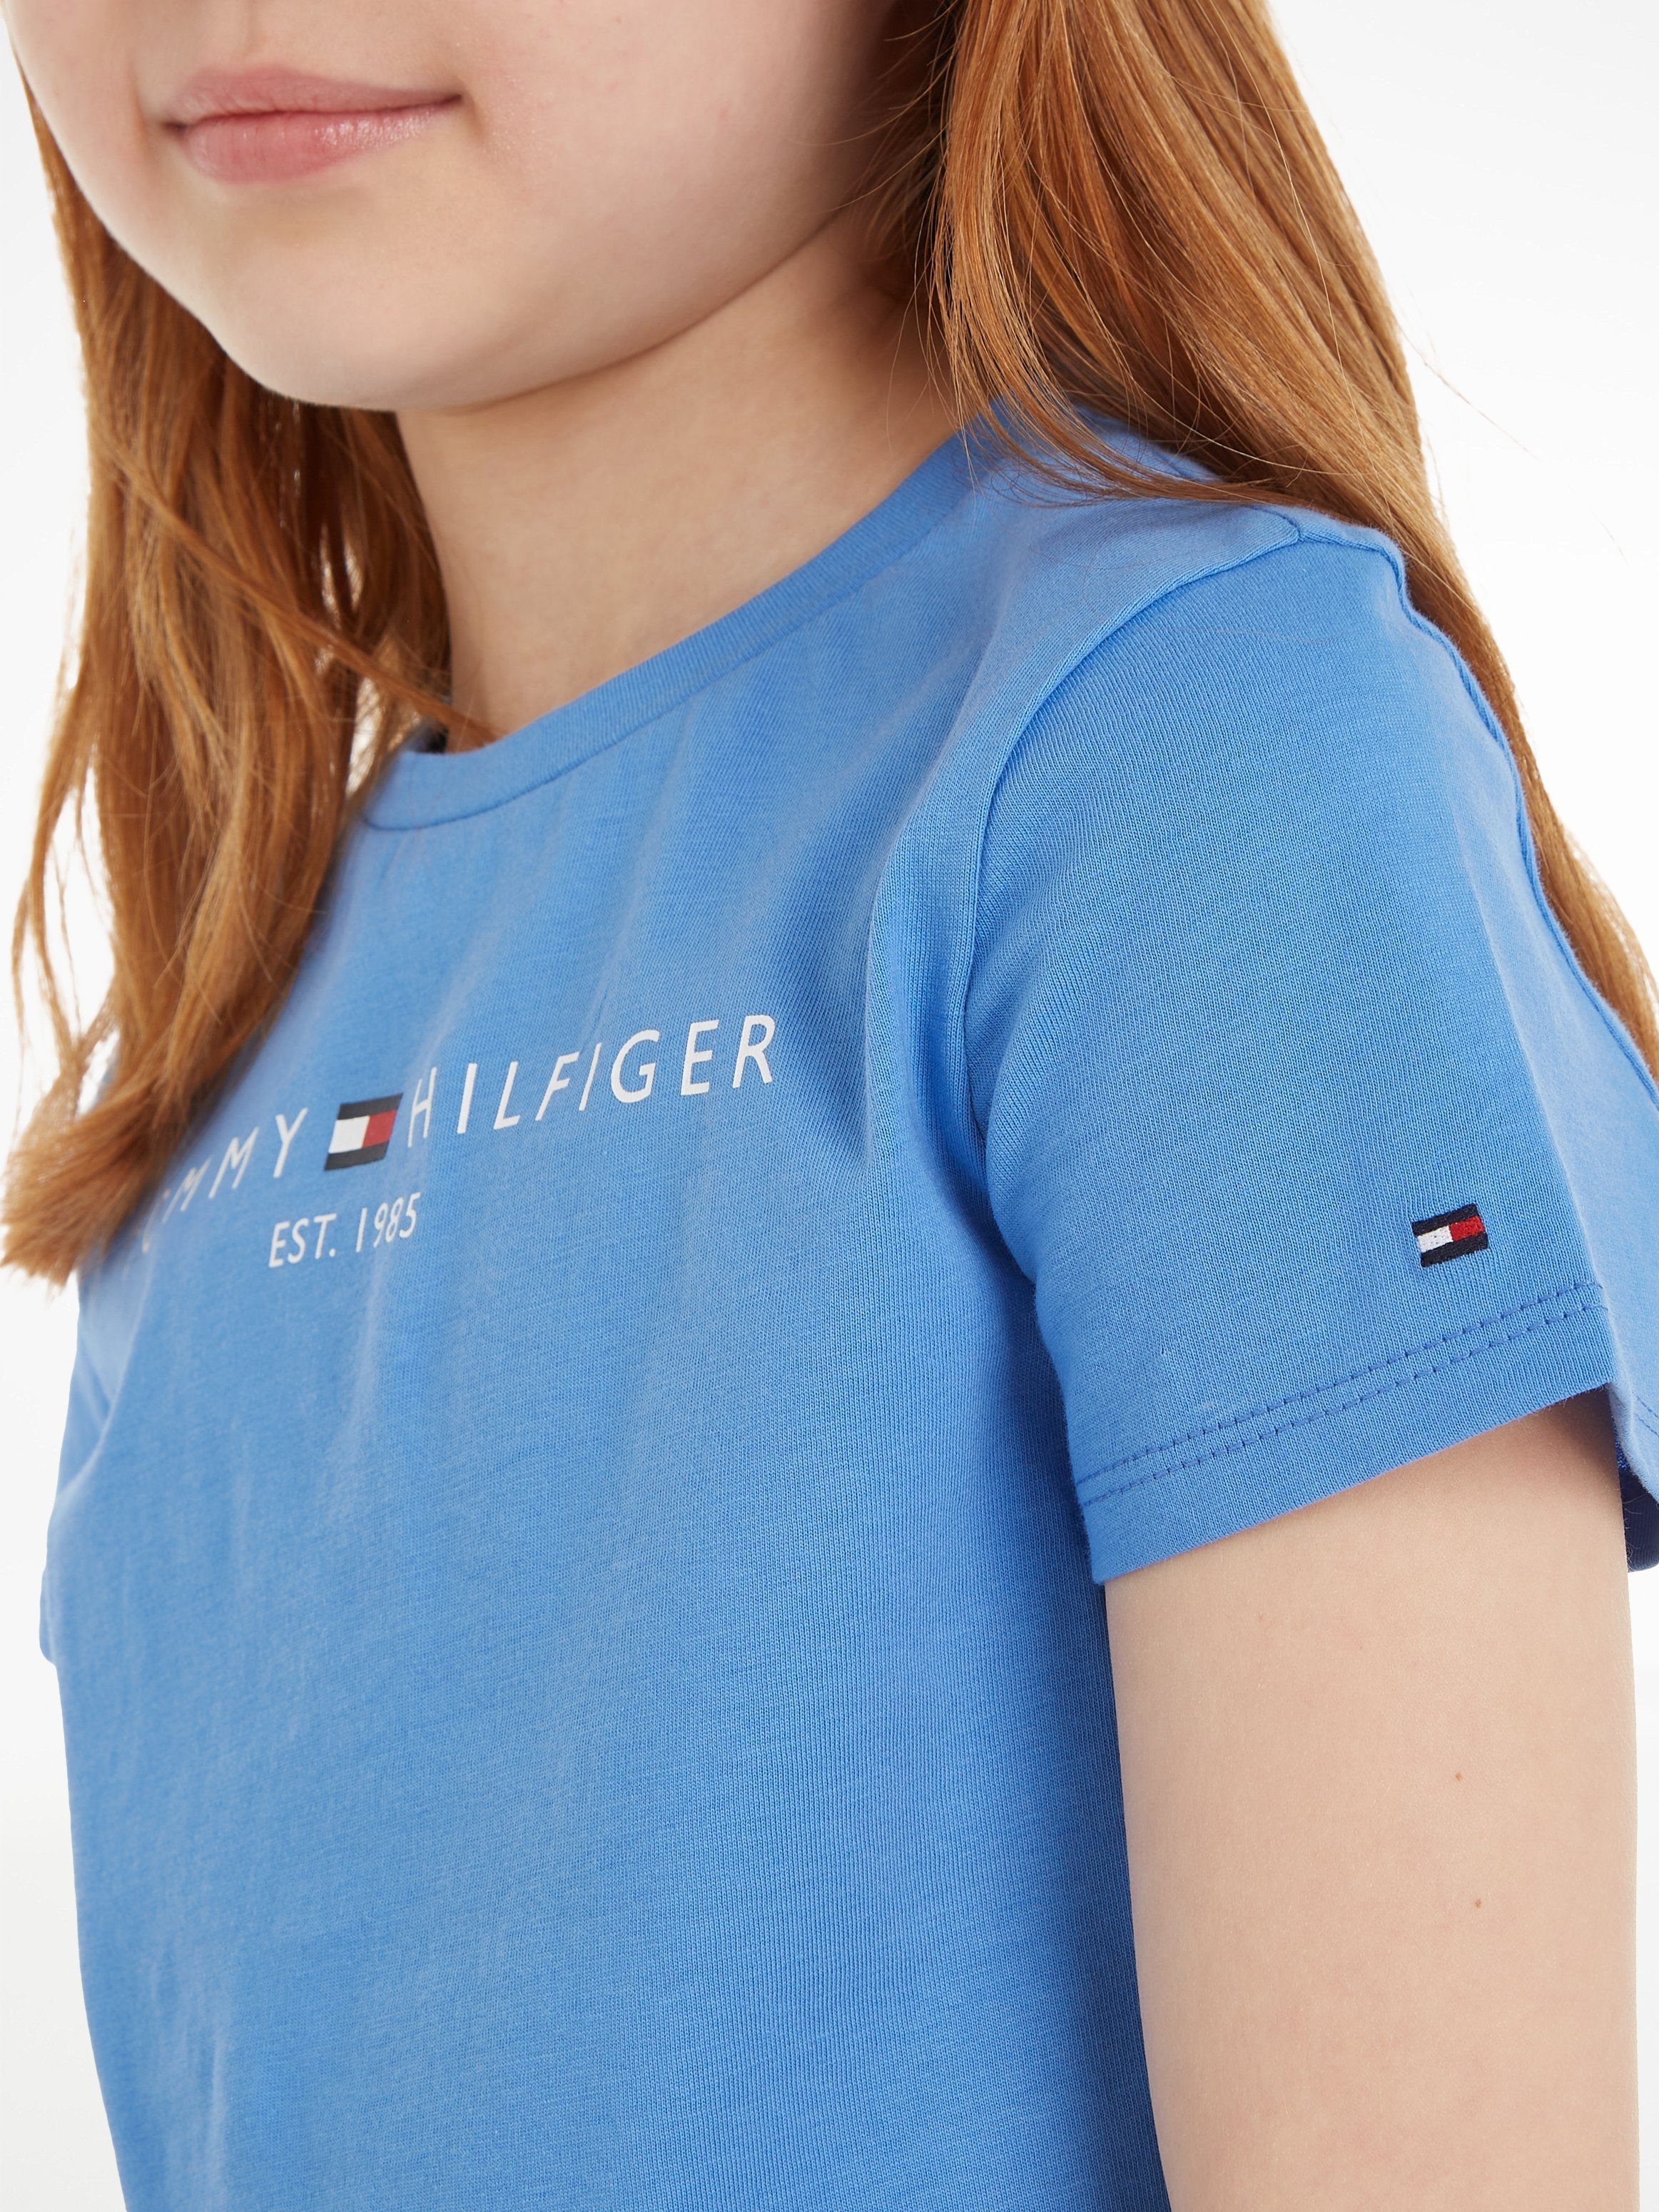 Tommy Hilfiger T-shirt met logo lichtblauw Meisjes Katoen Ronde hals Logo 104